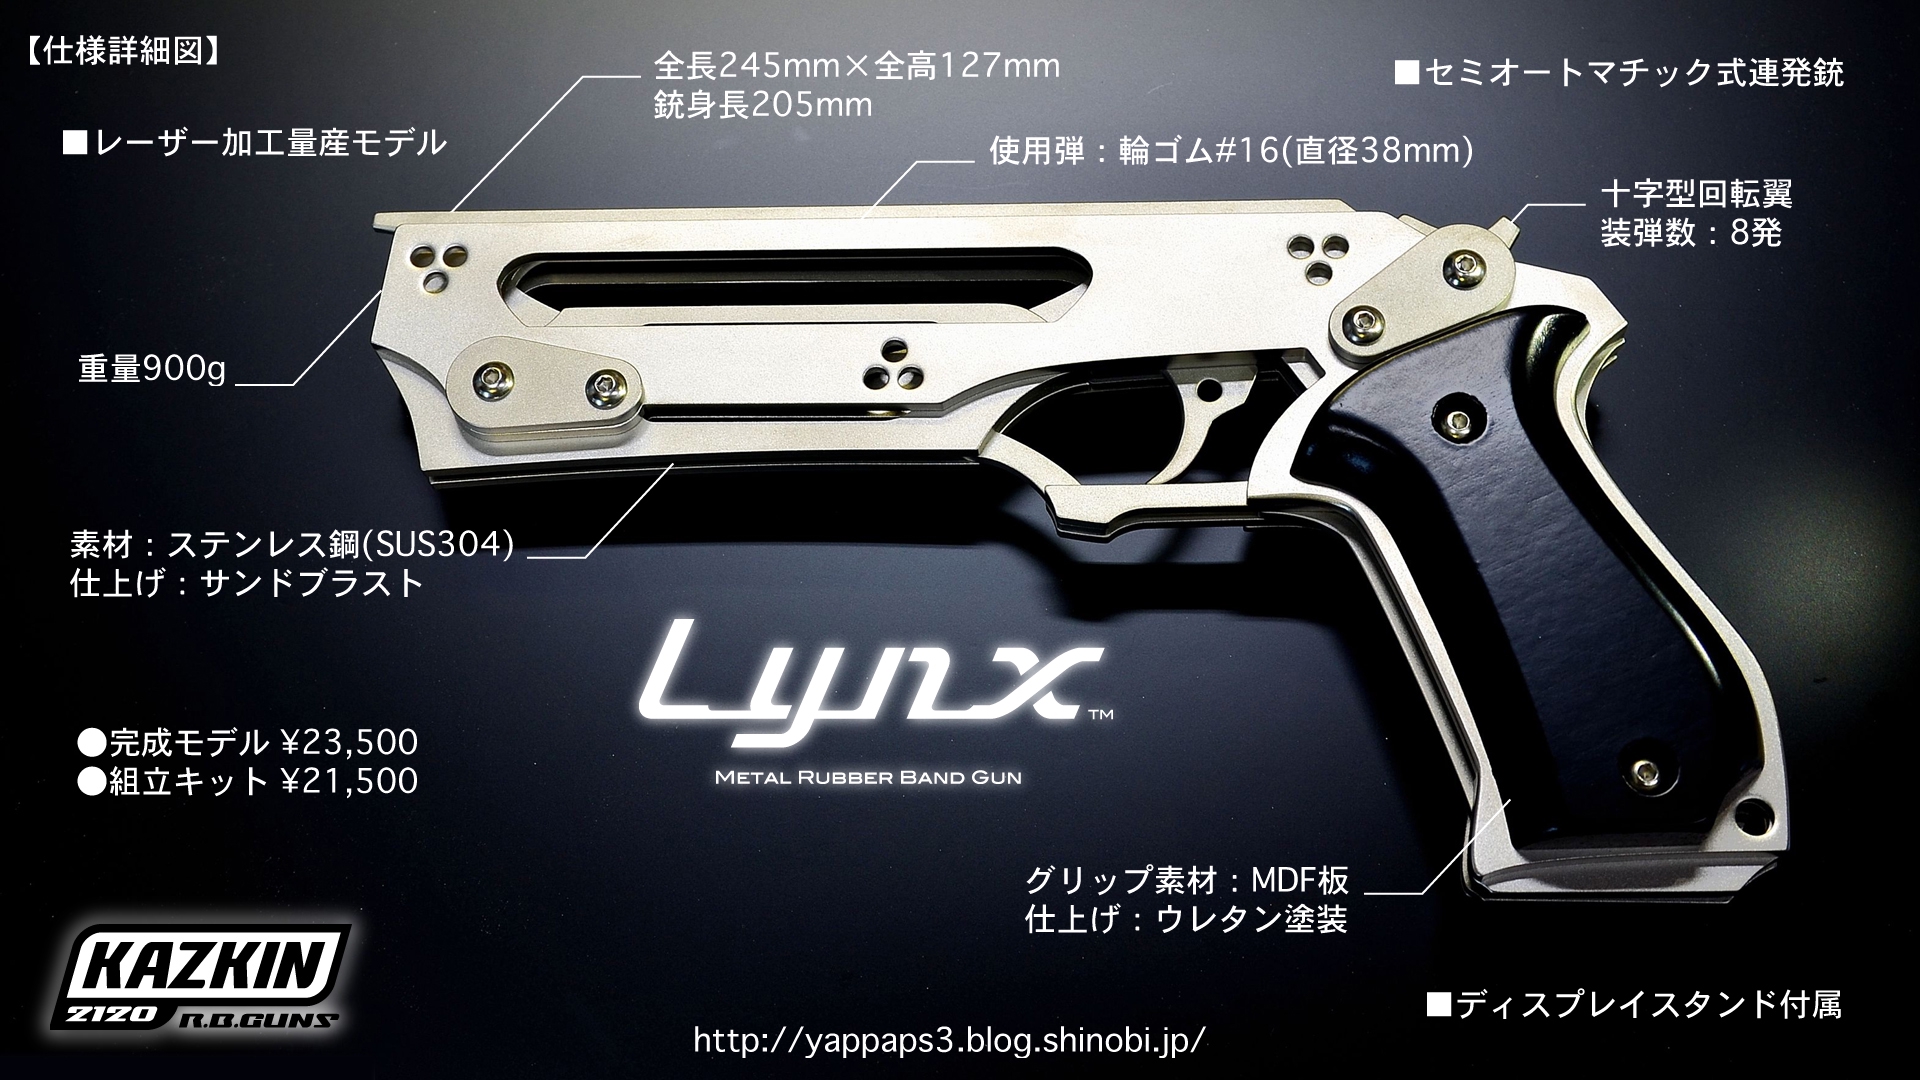 メタル輪ゴム銃 Lynx Jr. ラバーバンドガン KAZKIN2120 - トイガン